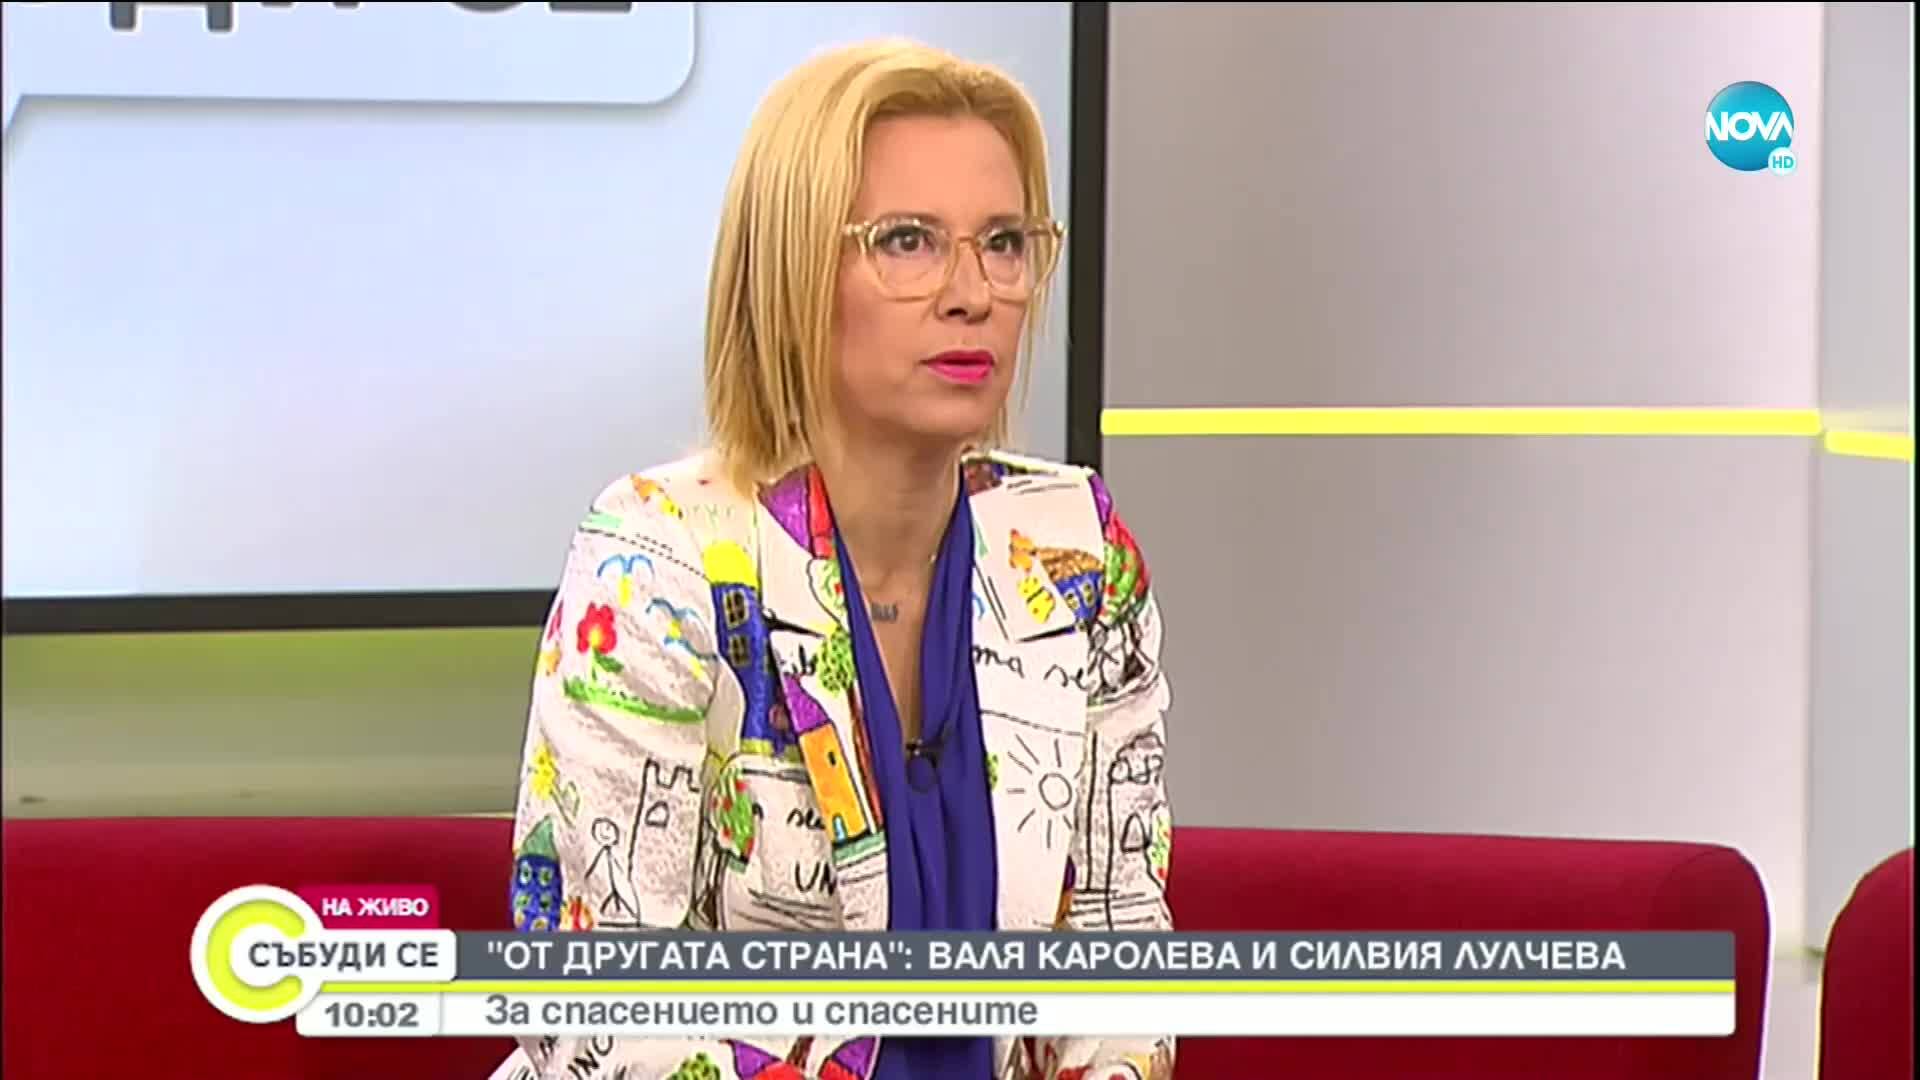 Валя Каролева и Силвия Лулчева дадоха старт на кампанията "От другата страна